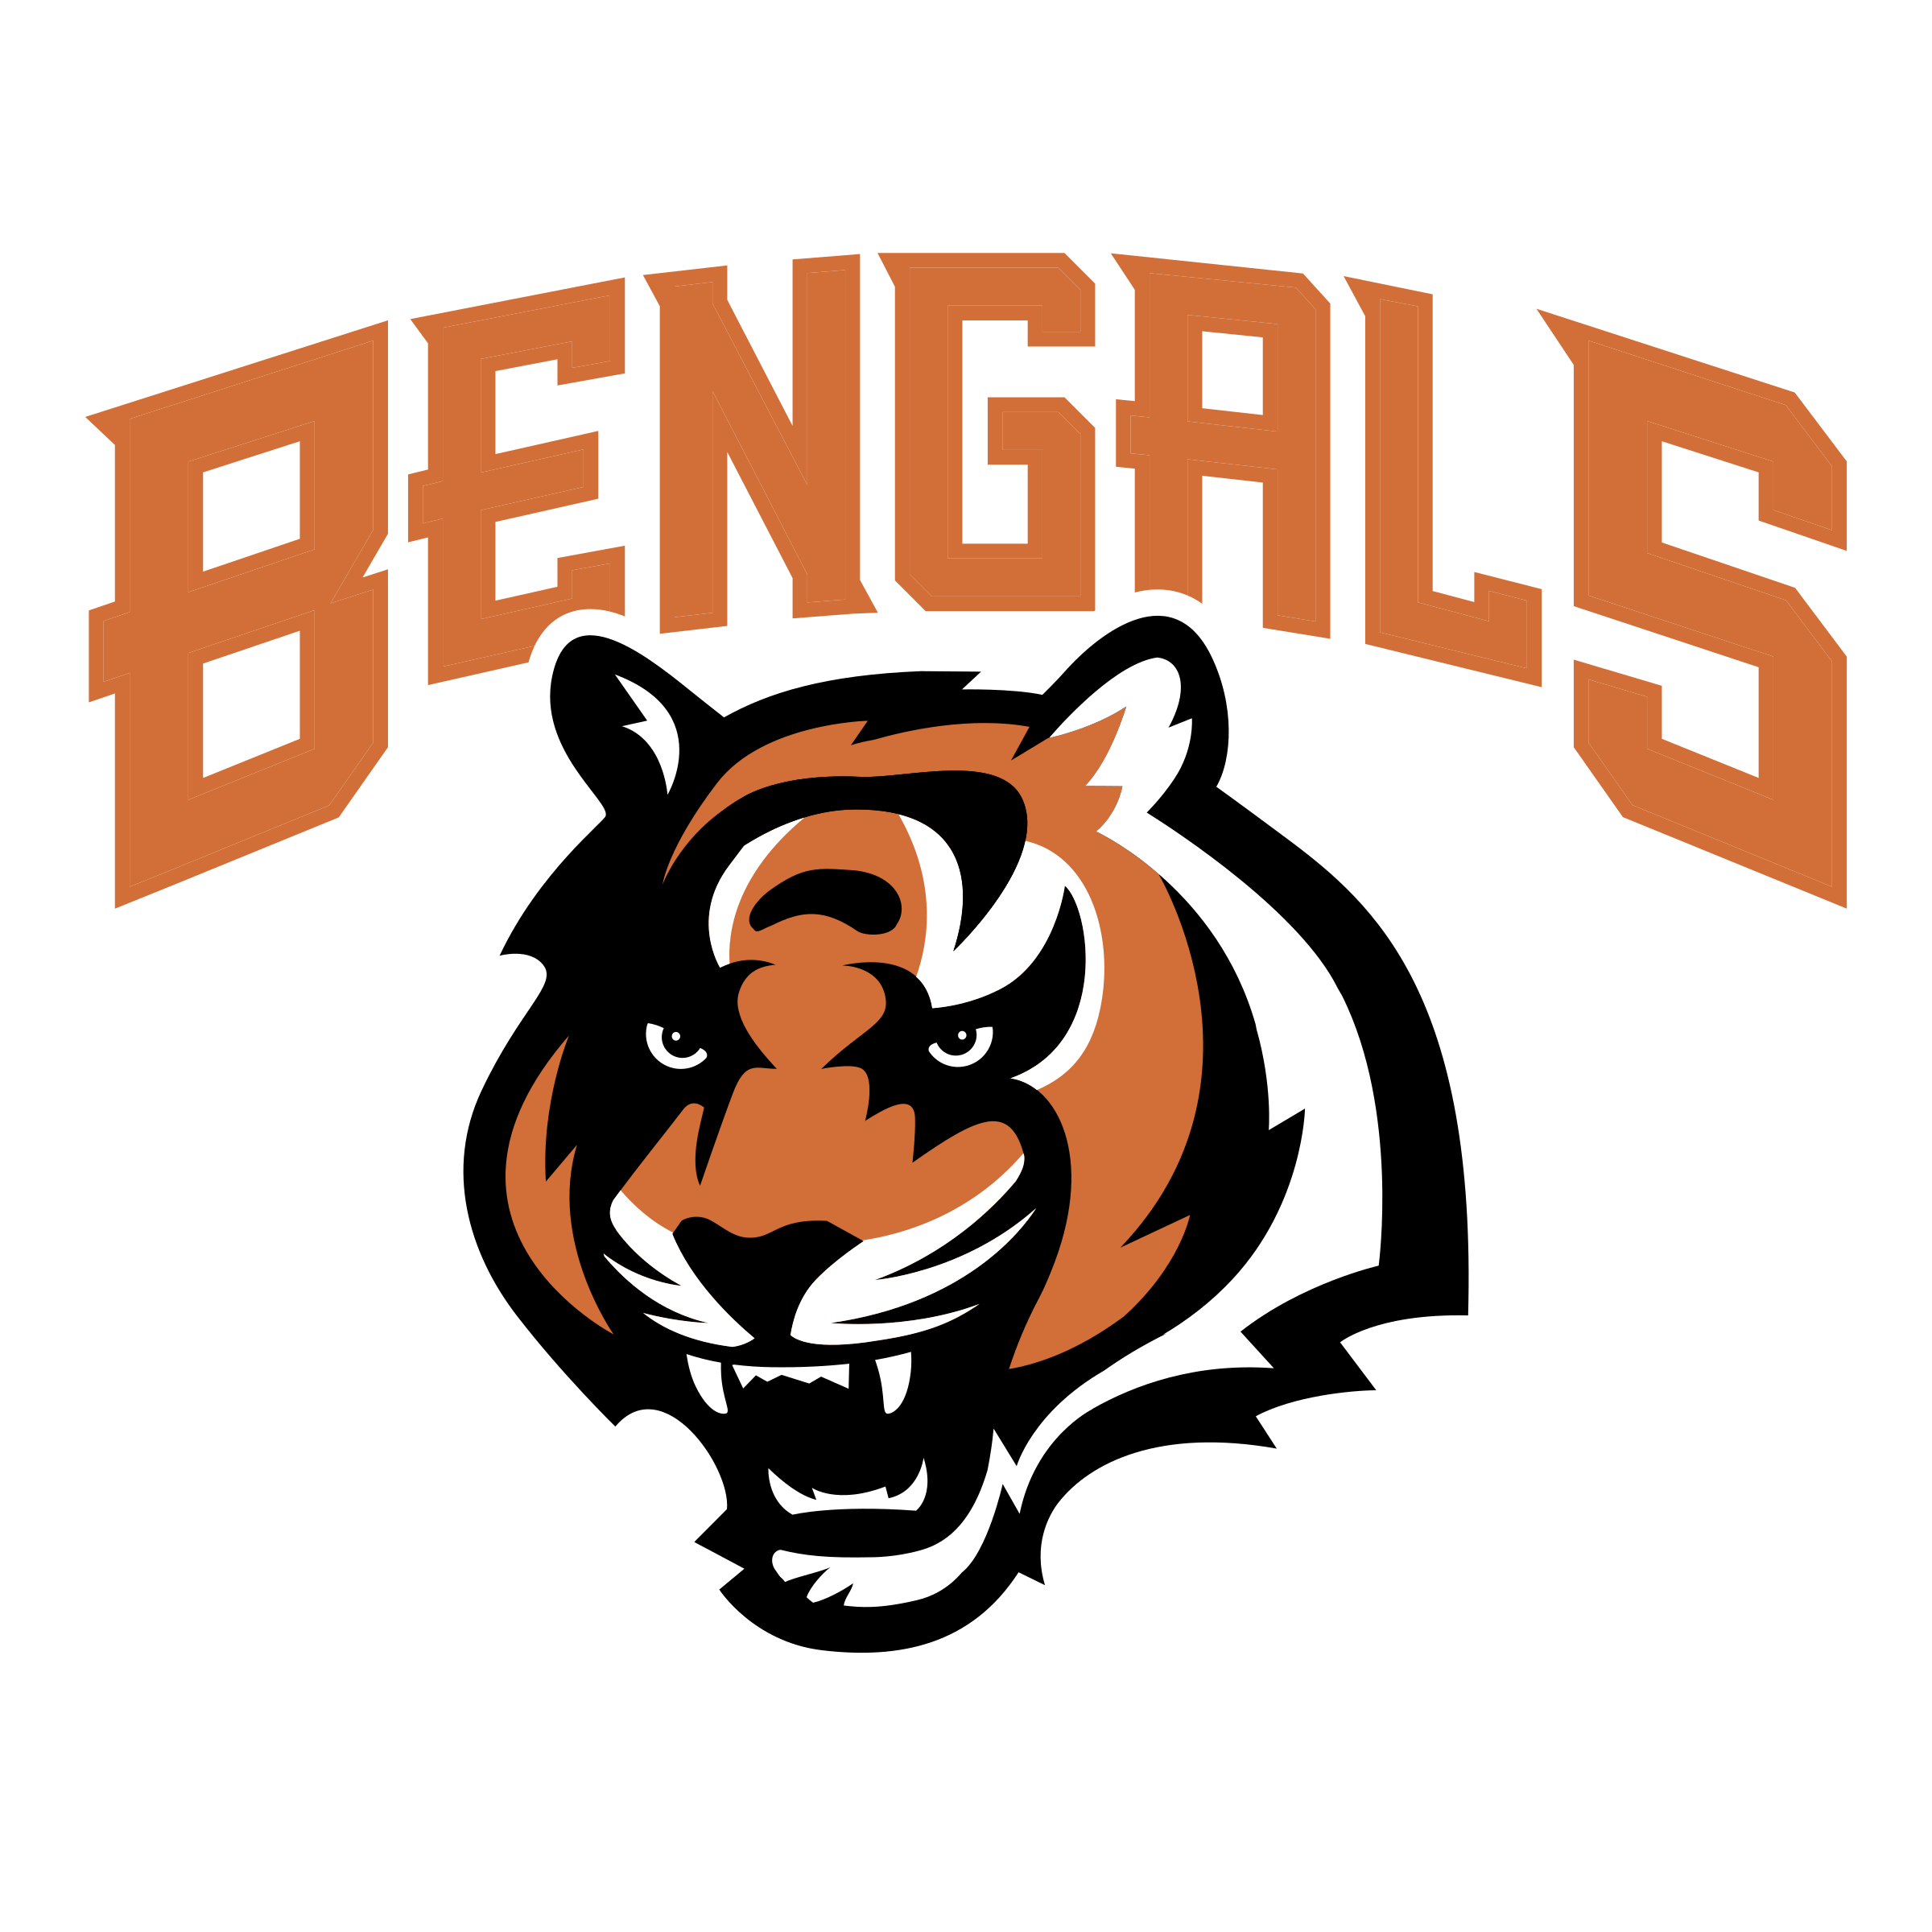 Bengals Logo Printable - Printable Blank World